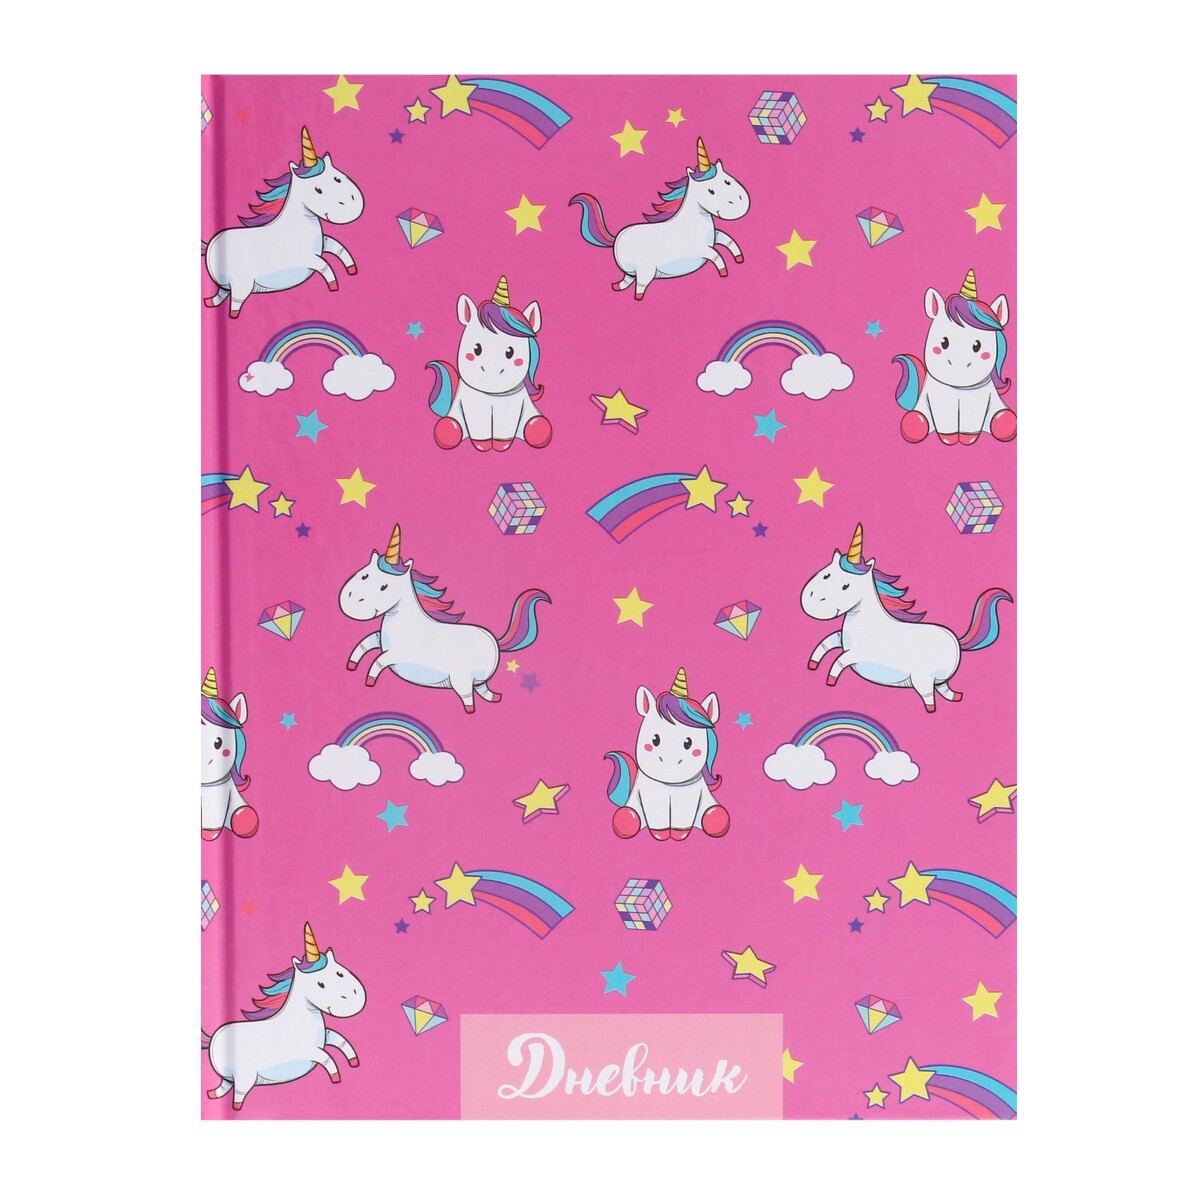 Дневник для 1-4 классов, школьный дневник light pink soft touch